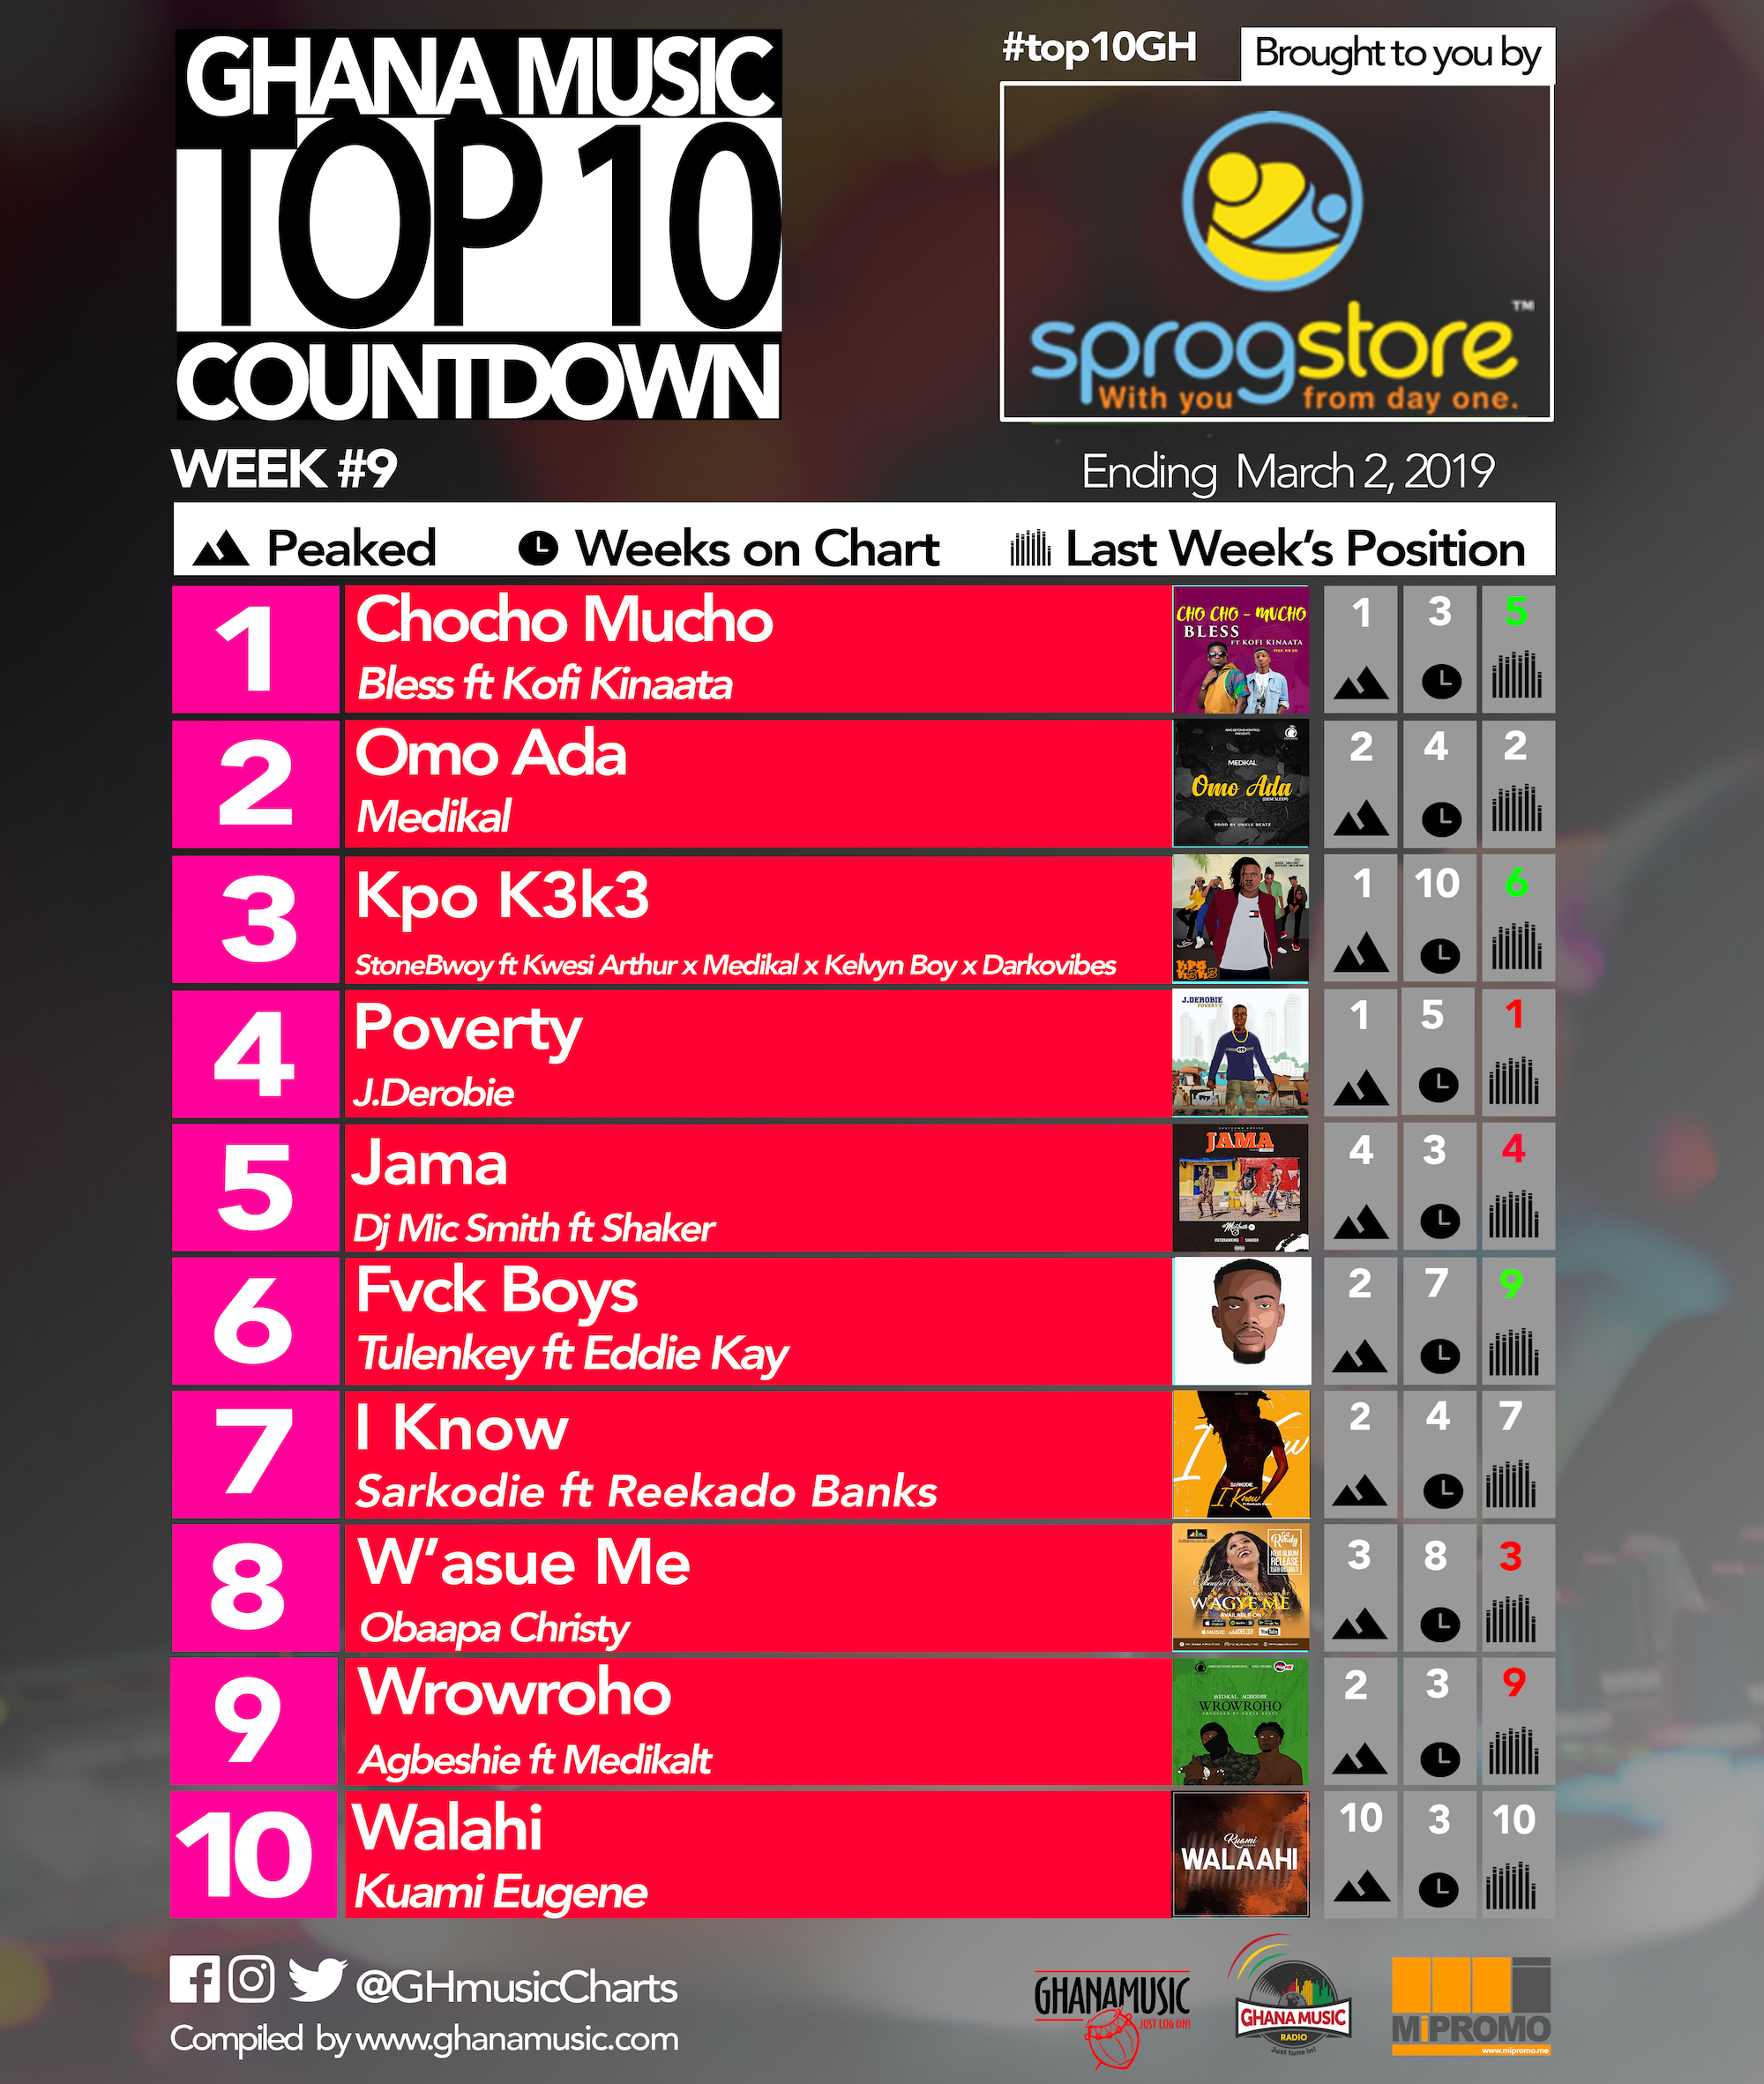 Week #9: Ghana Music Top 10 Countdown